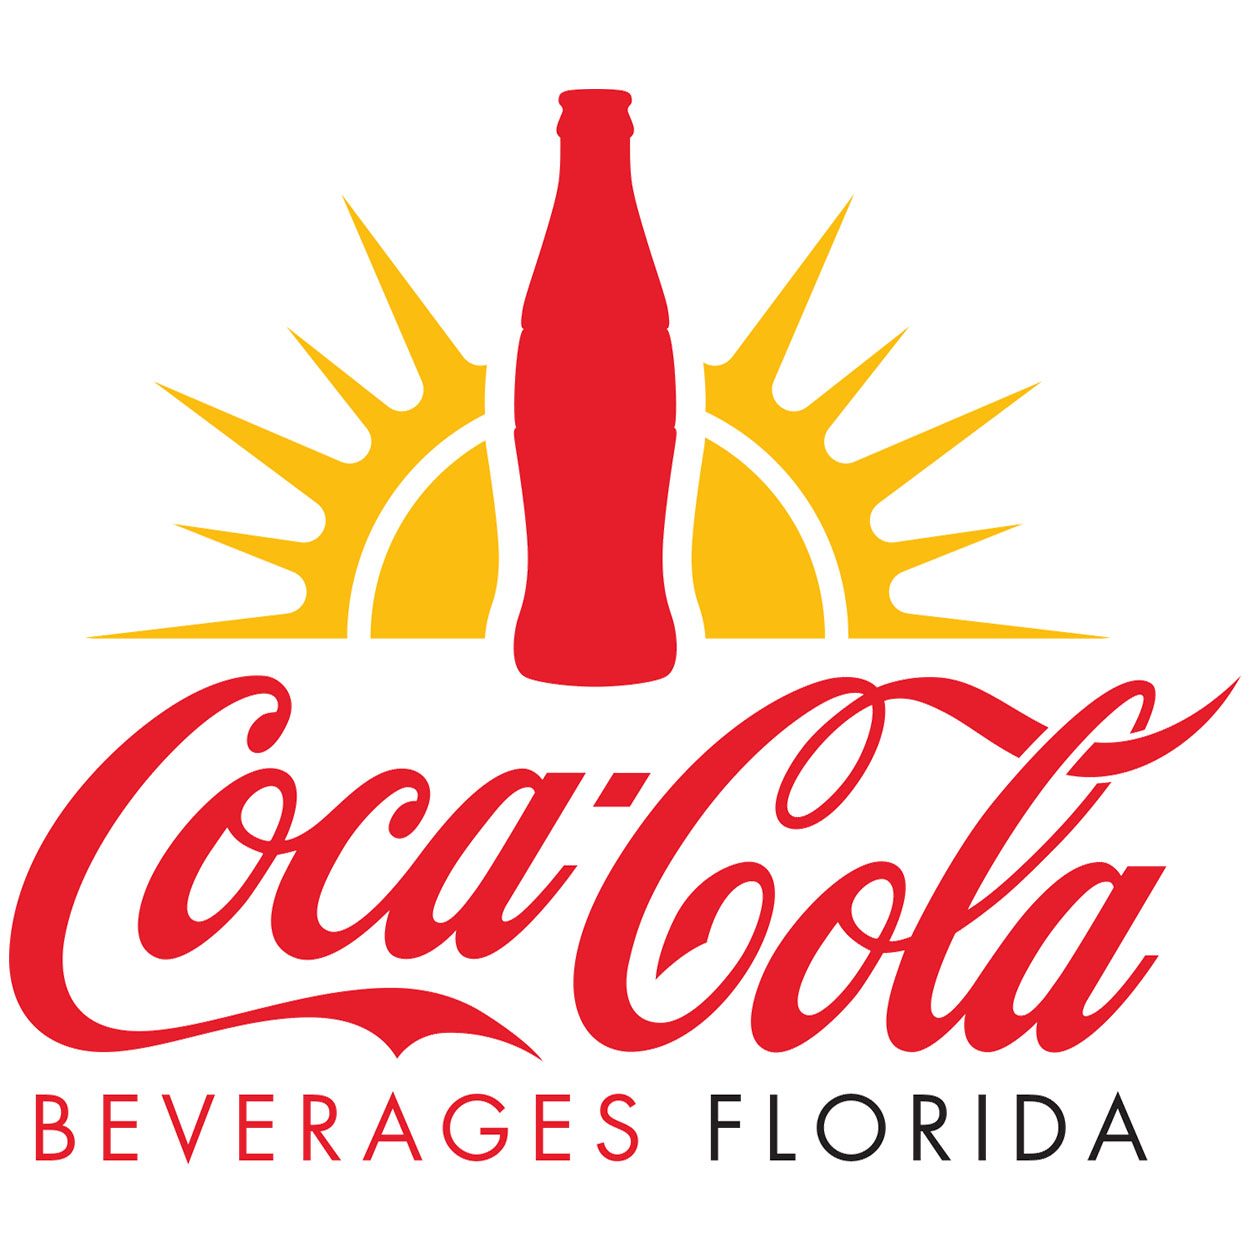 Coca Cola Florida logo